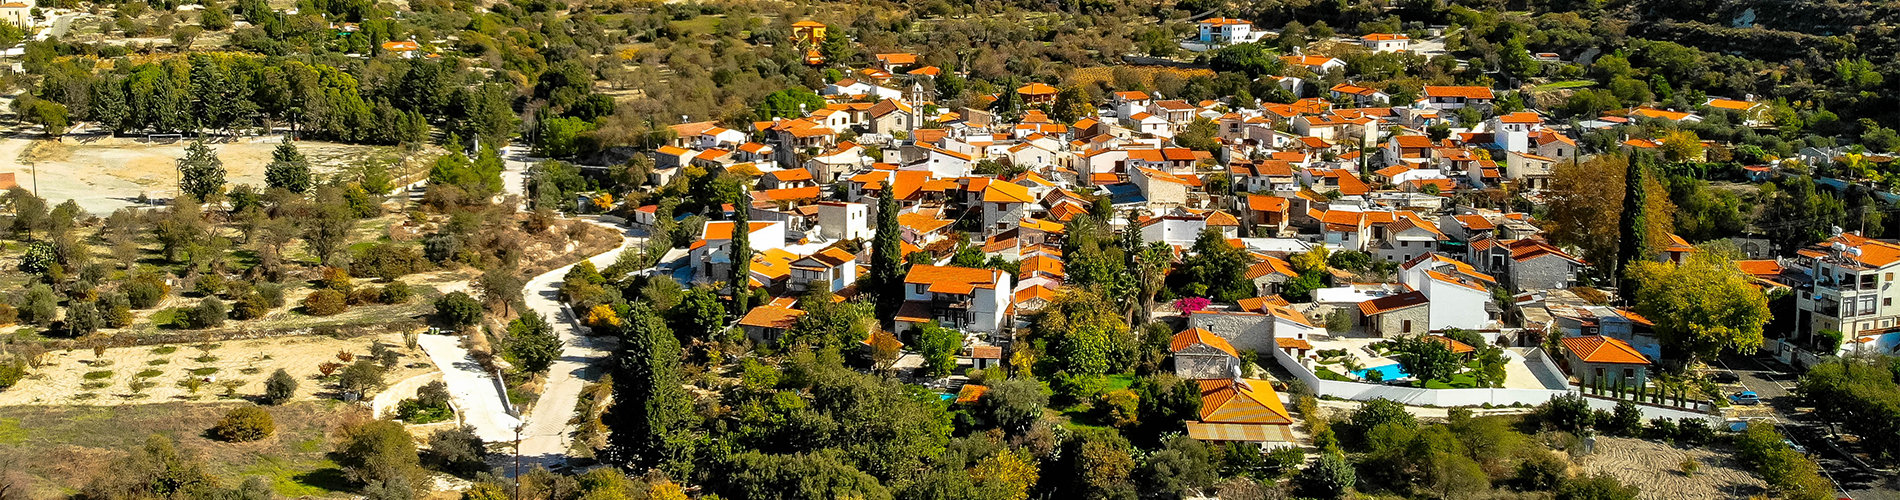 Laneia Village